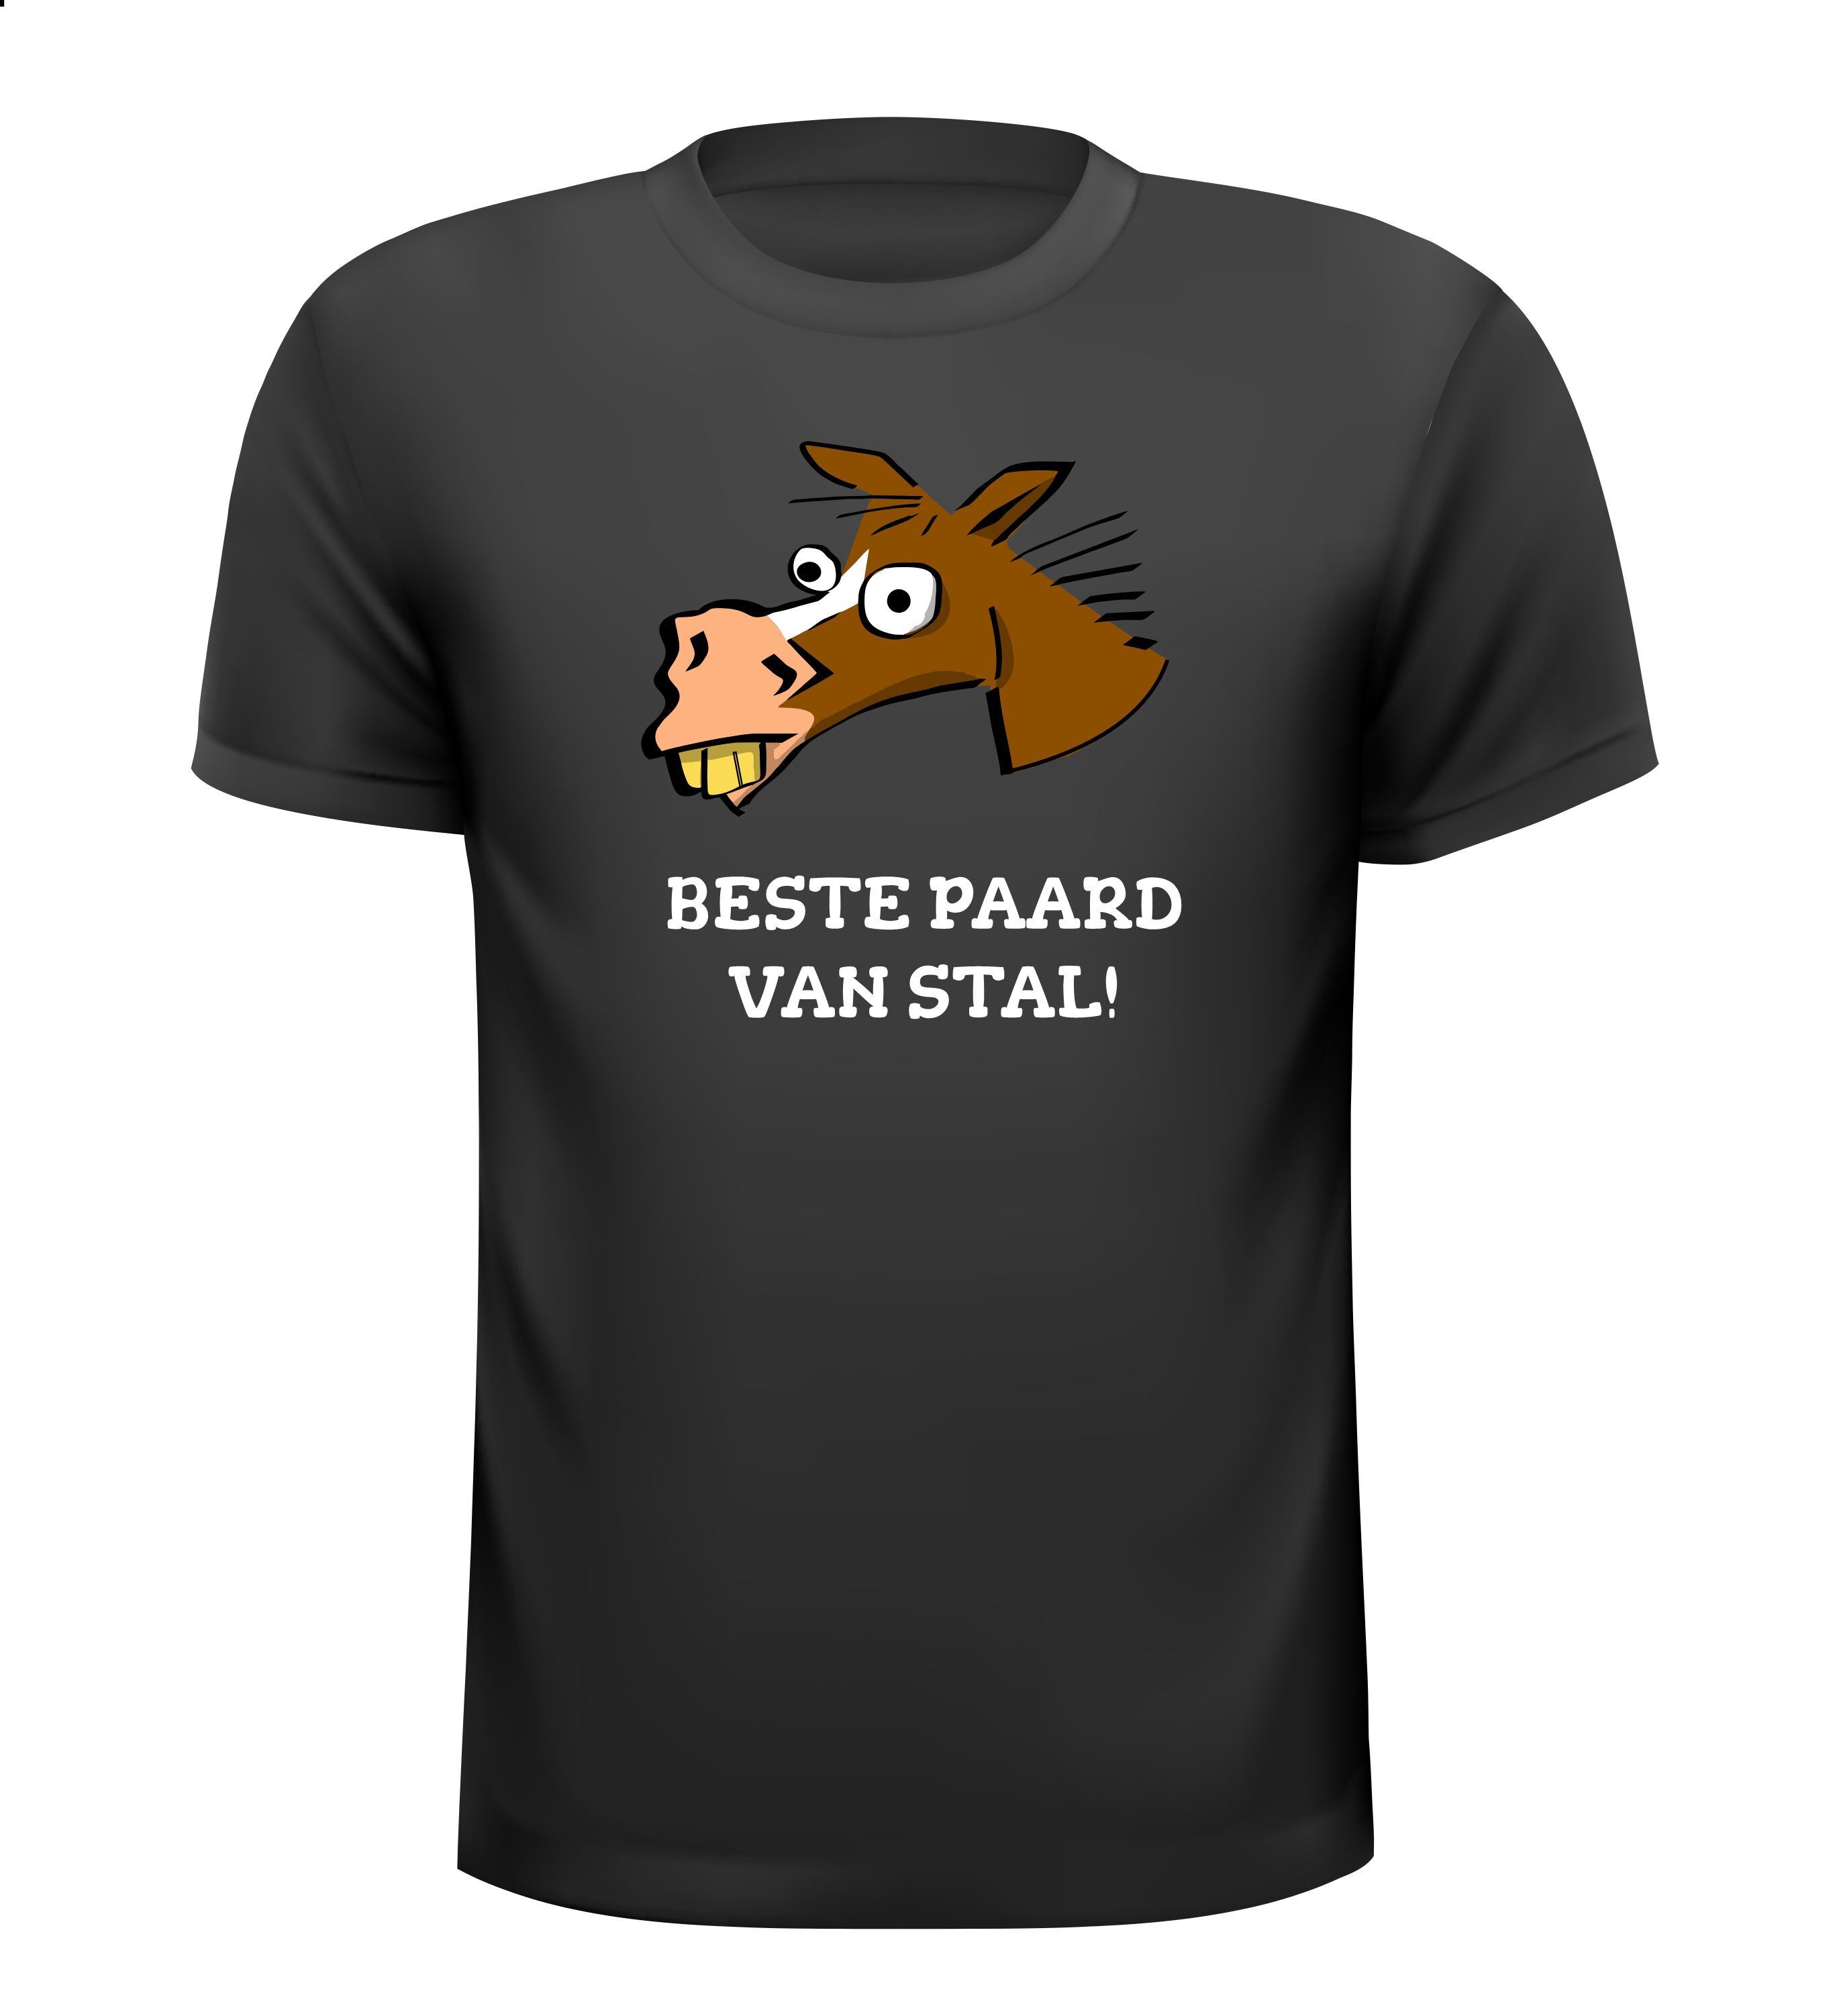 T-shirt voor het beste paard van stal